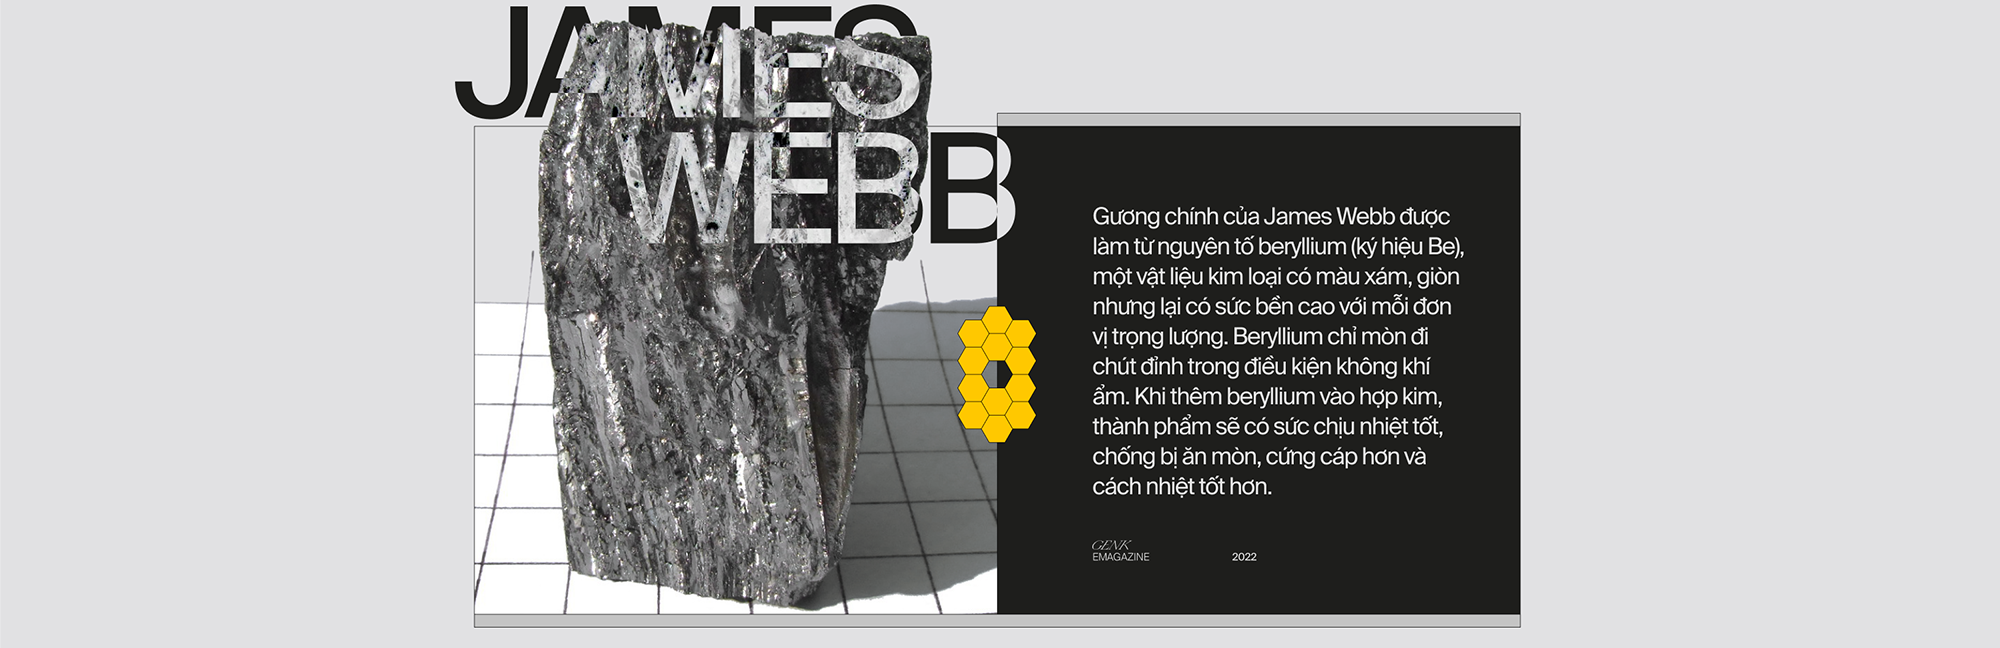 Kính viễn vọng Không gian James Webb - cỗ máy thời gian đưa nhân loại về buổi bình minh của Vũ trụ - Ảnh 9.